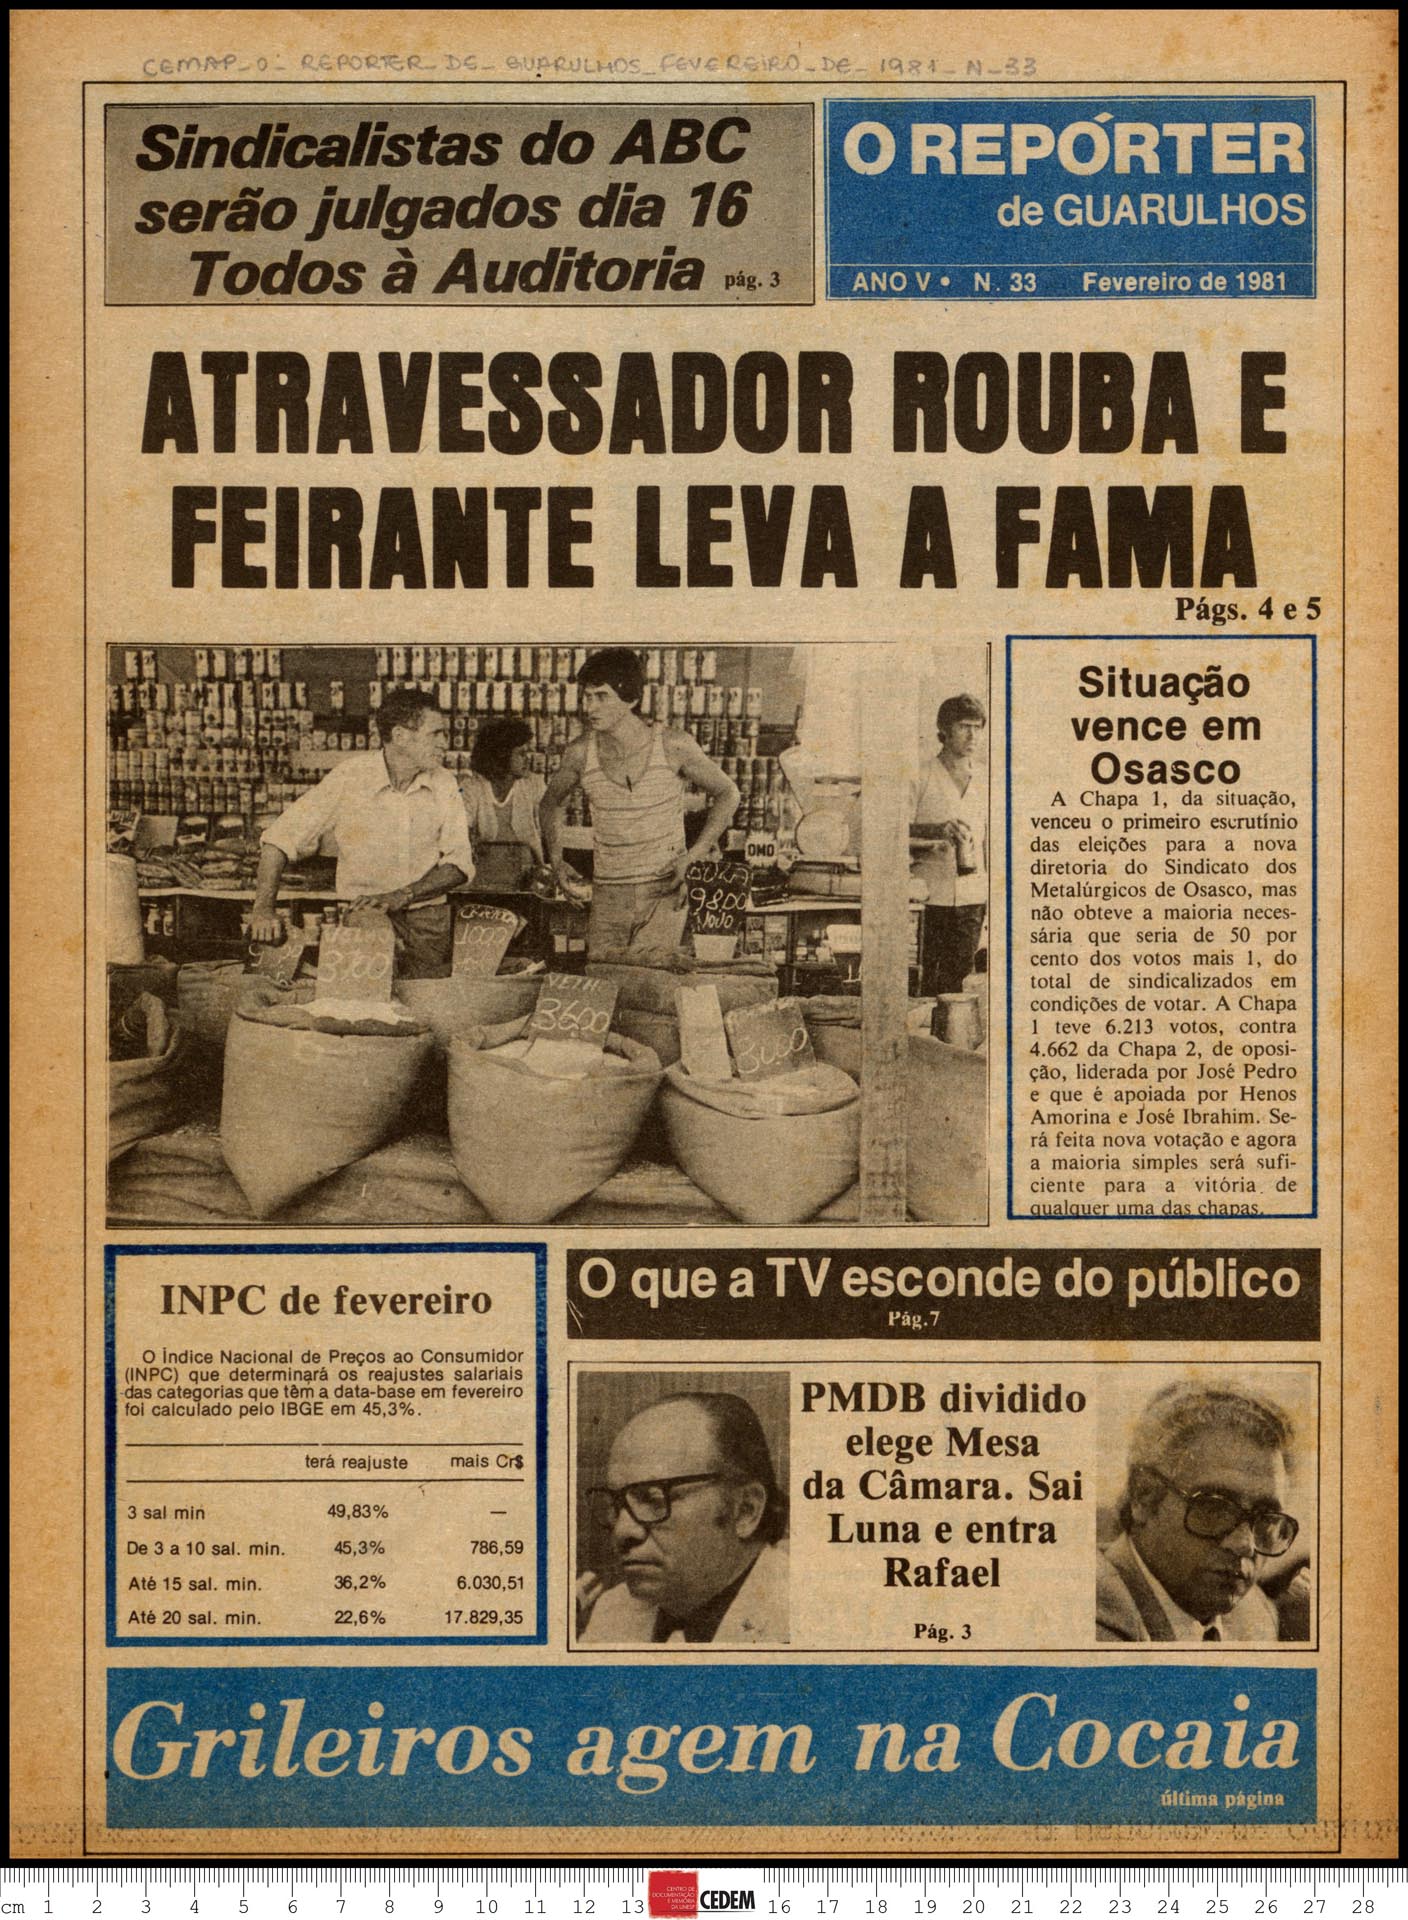 O reportér de Guarulhos - 33 - fev. 1981